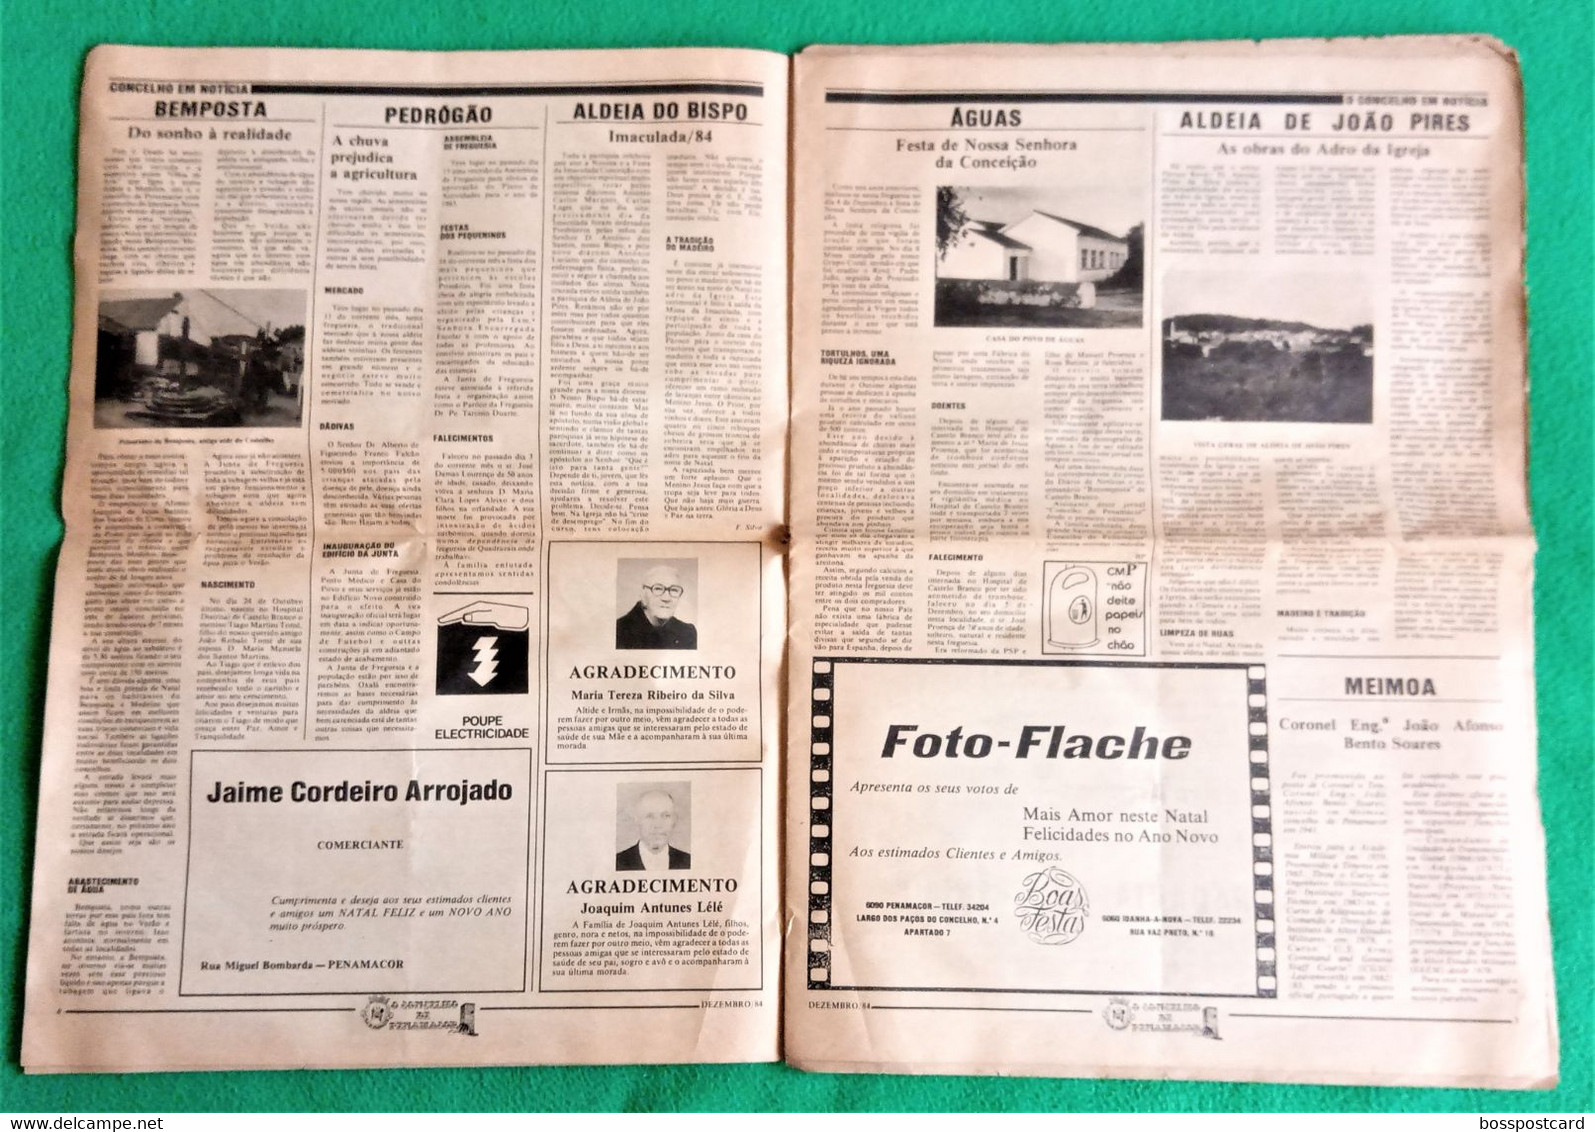 Penamacor - Jornal O Concelho De Penamacor Nº 45, 31 De Dezembro De 1984 - Imprensa. Castelo Branco. Portugal. - Informations Générales